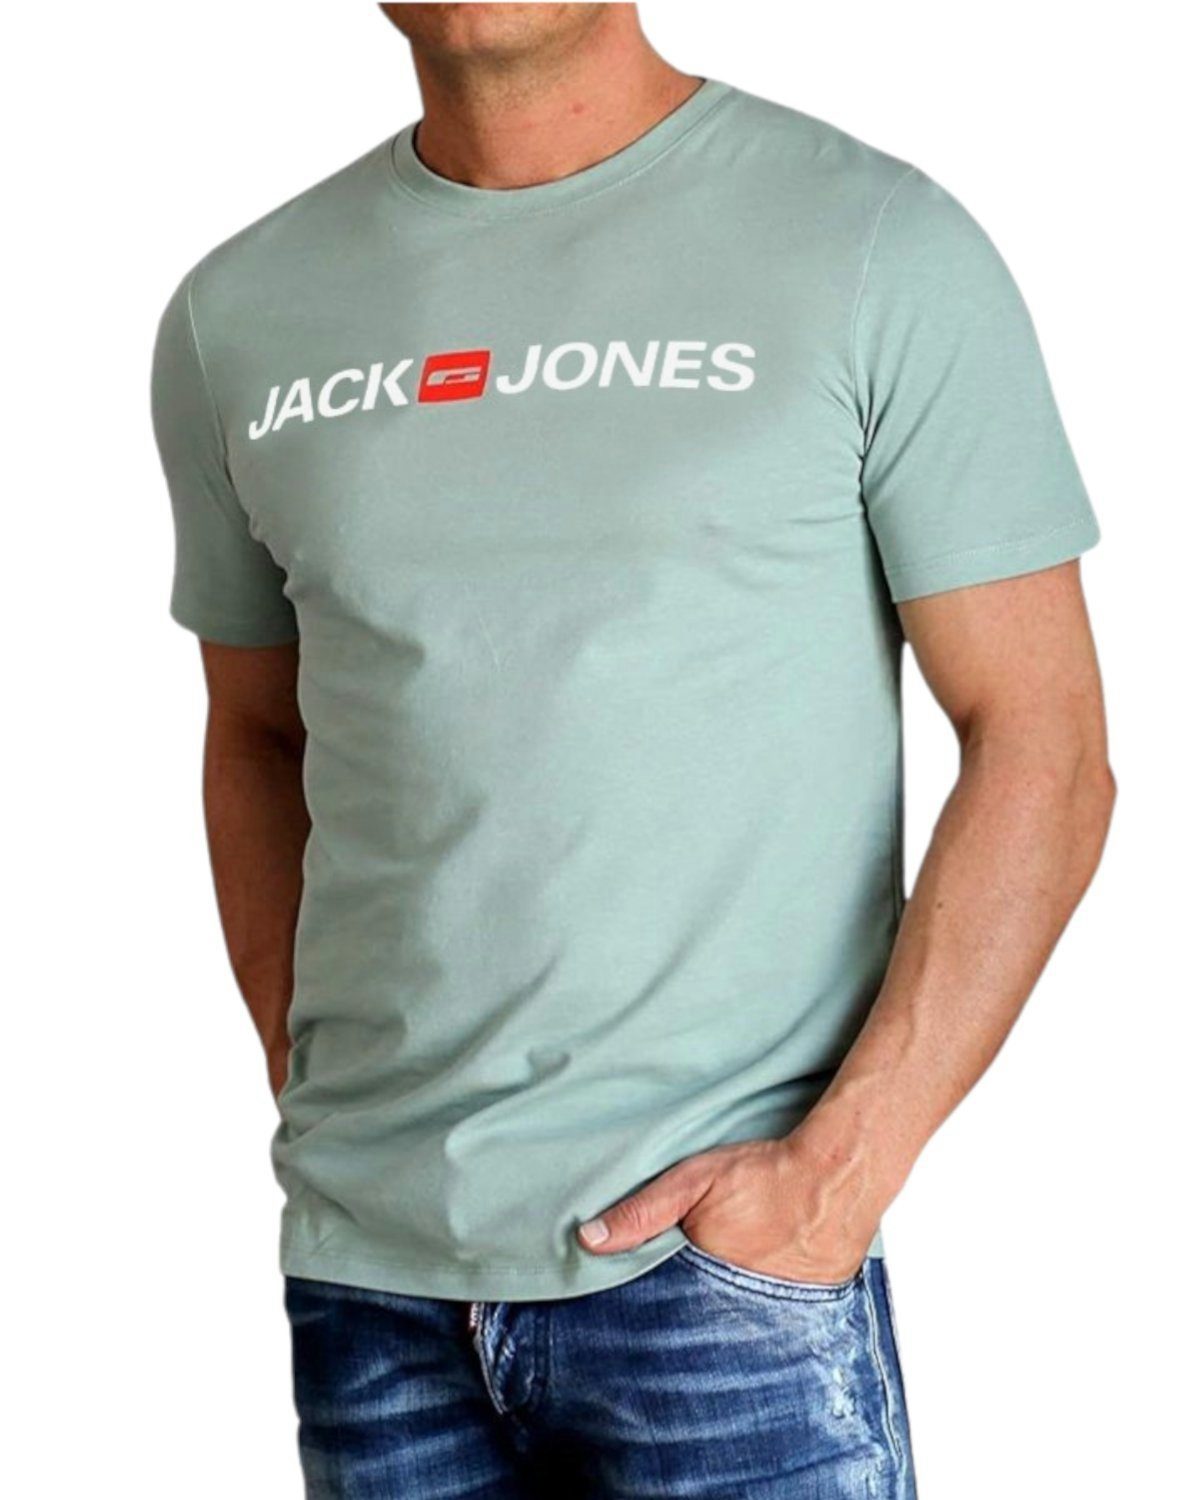 Jones Jack Green Rundhalsausschnitt, & Baumwolle Iceberg aus mit Print-Shirt White Print